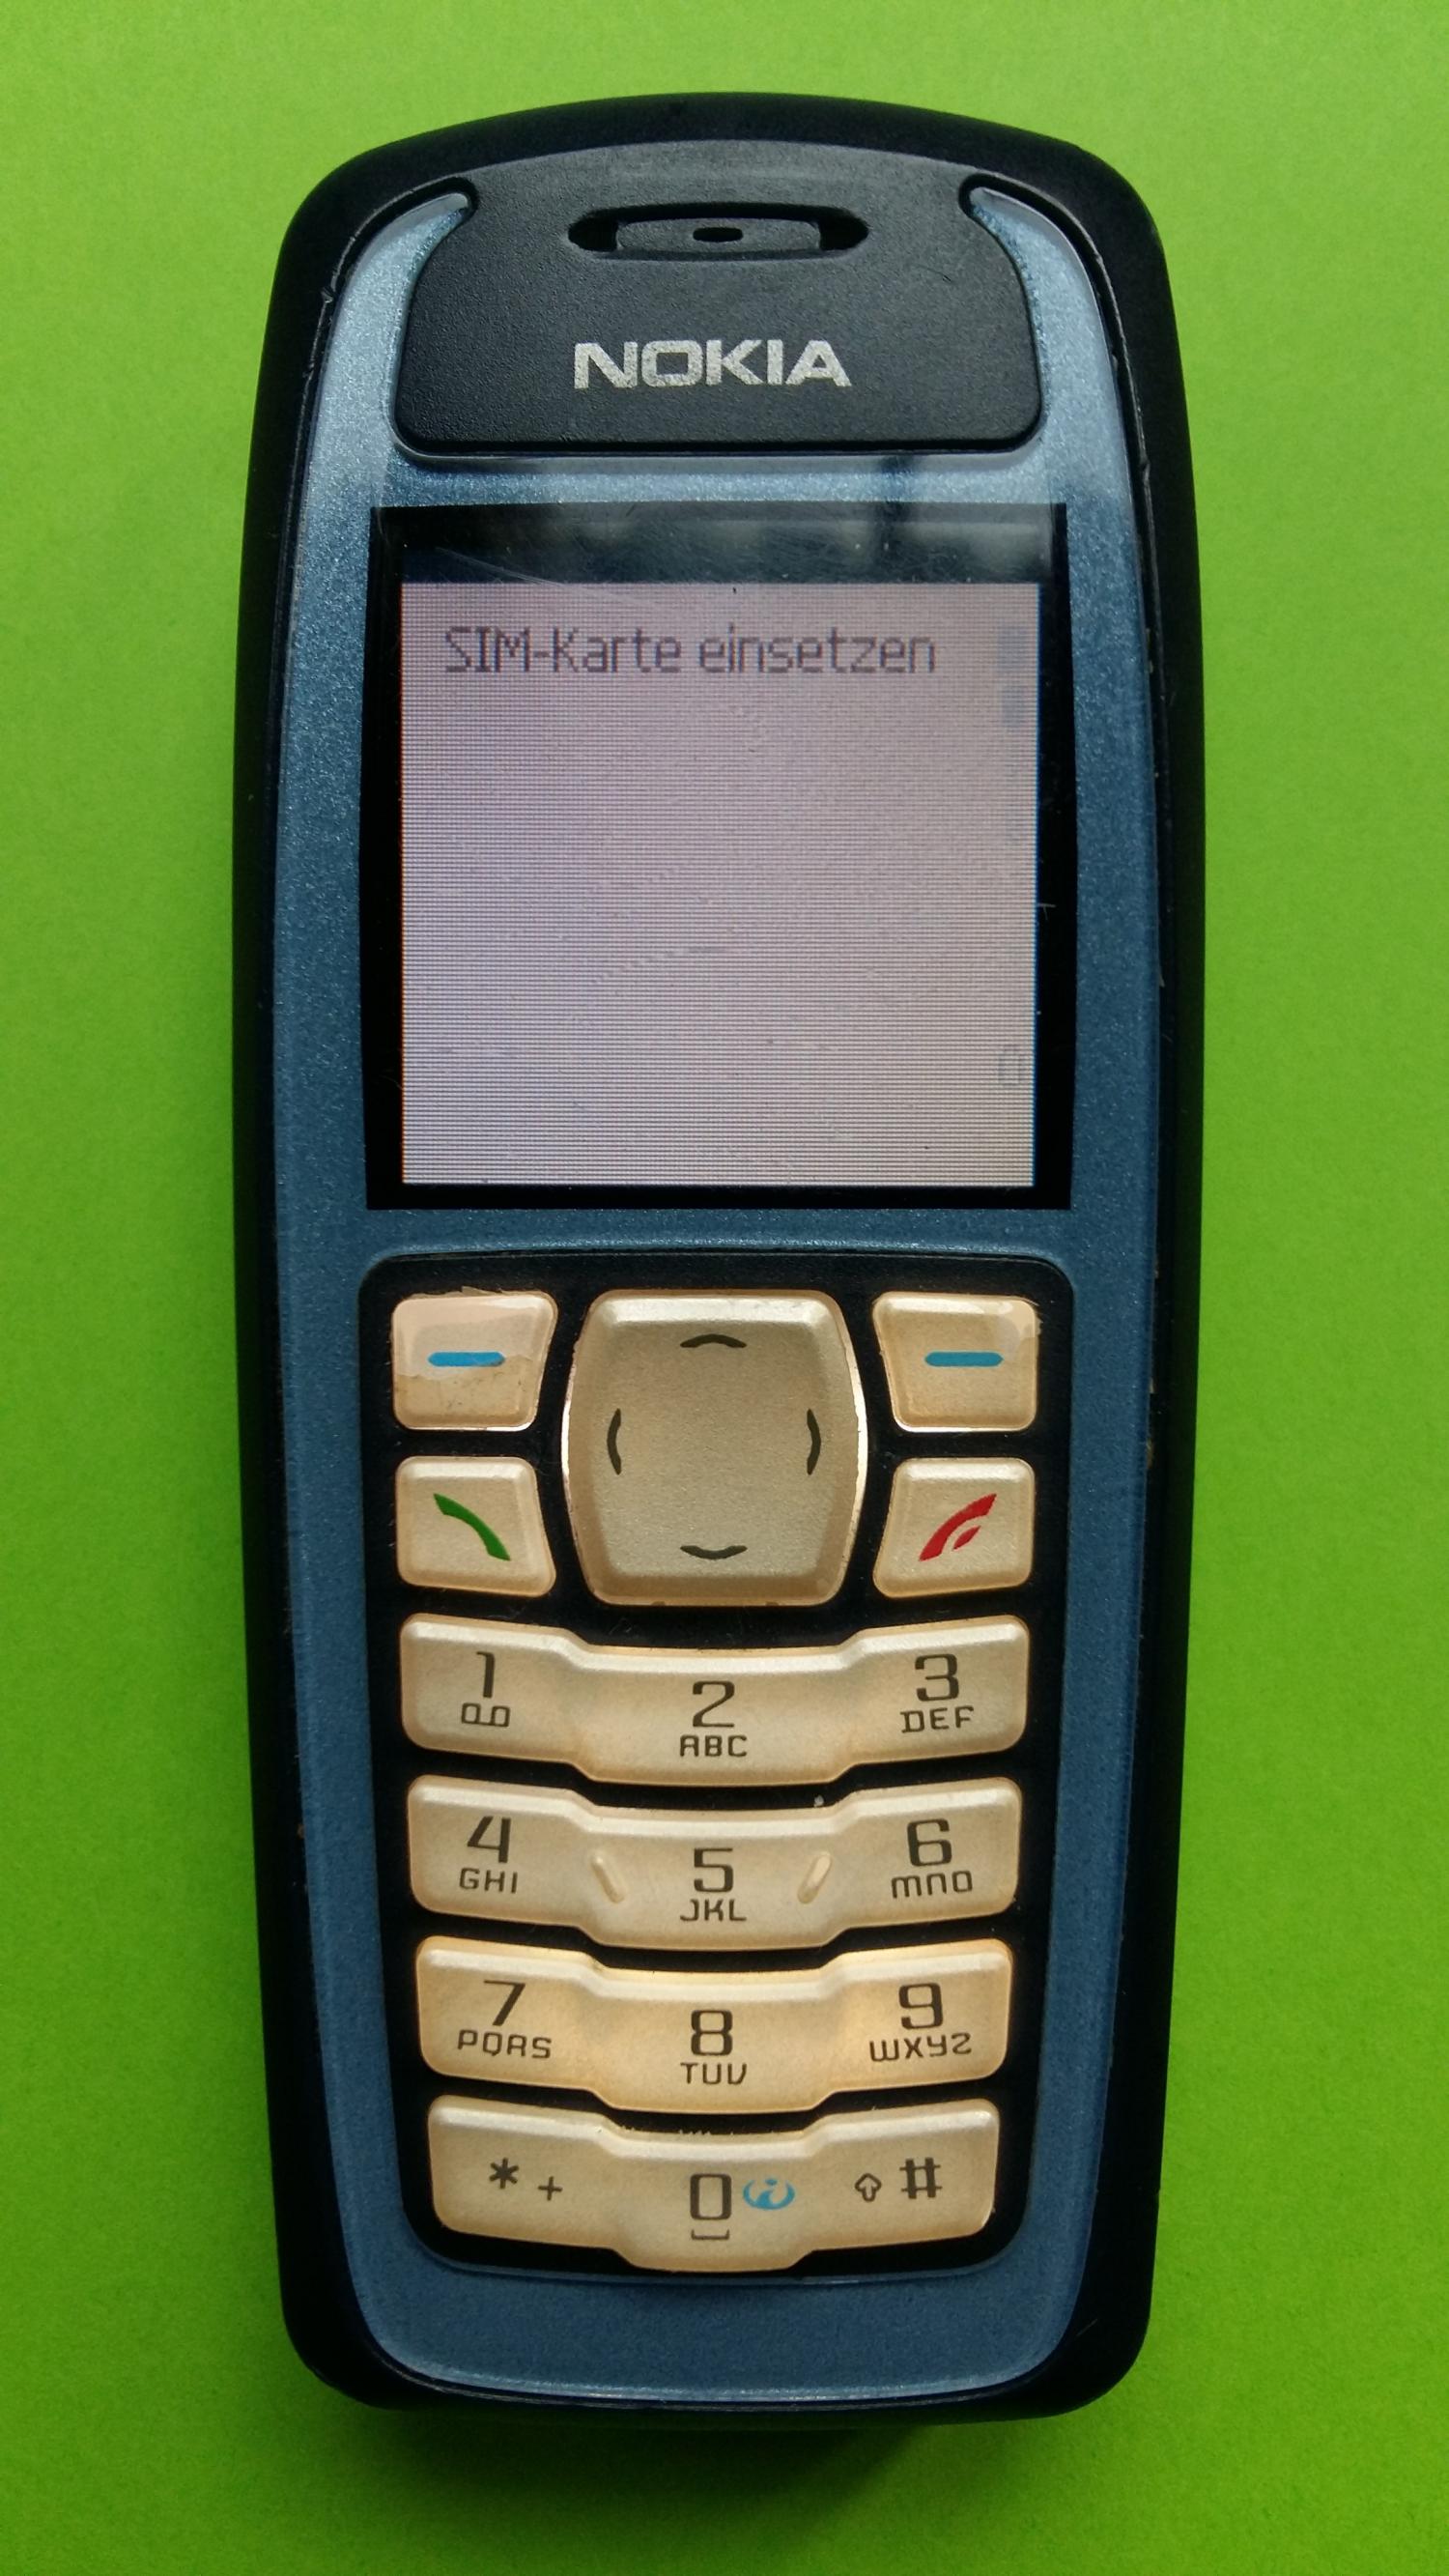 image-7321128-Nokia 3100 (2)1.jpg